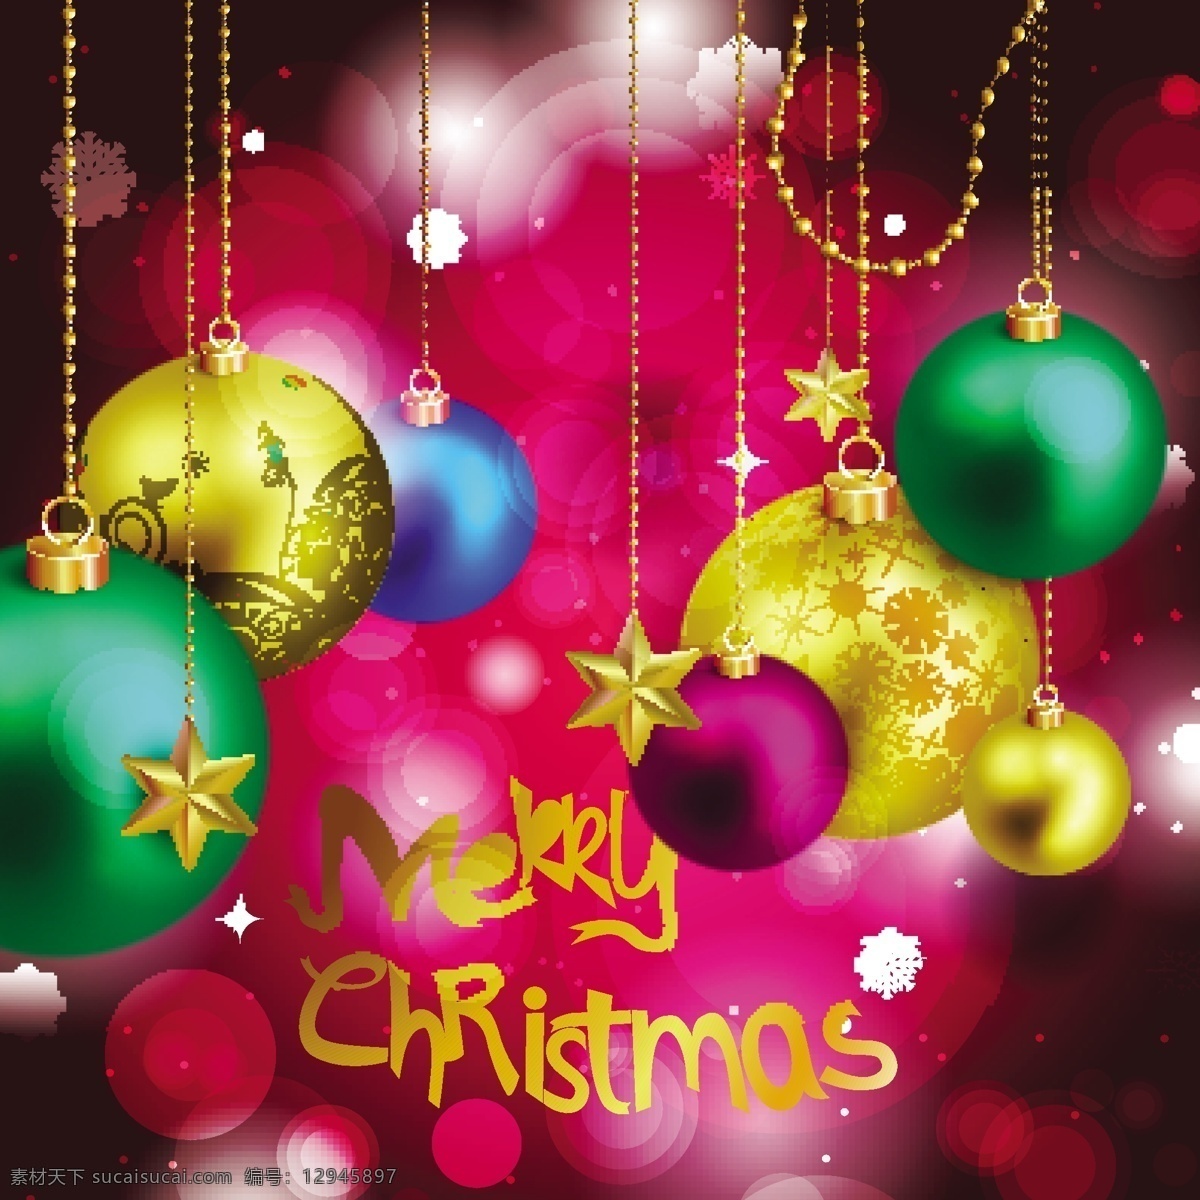 圣诞吊球 圣诞球 丝带圣诞节 新年背景 圣诞装饰素材 2015 年 新年 羊年 矢量 文化艺术 节日庆祝